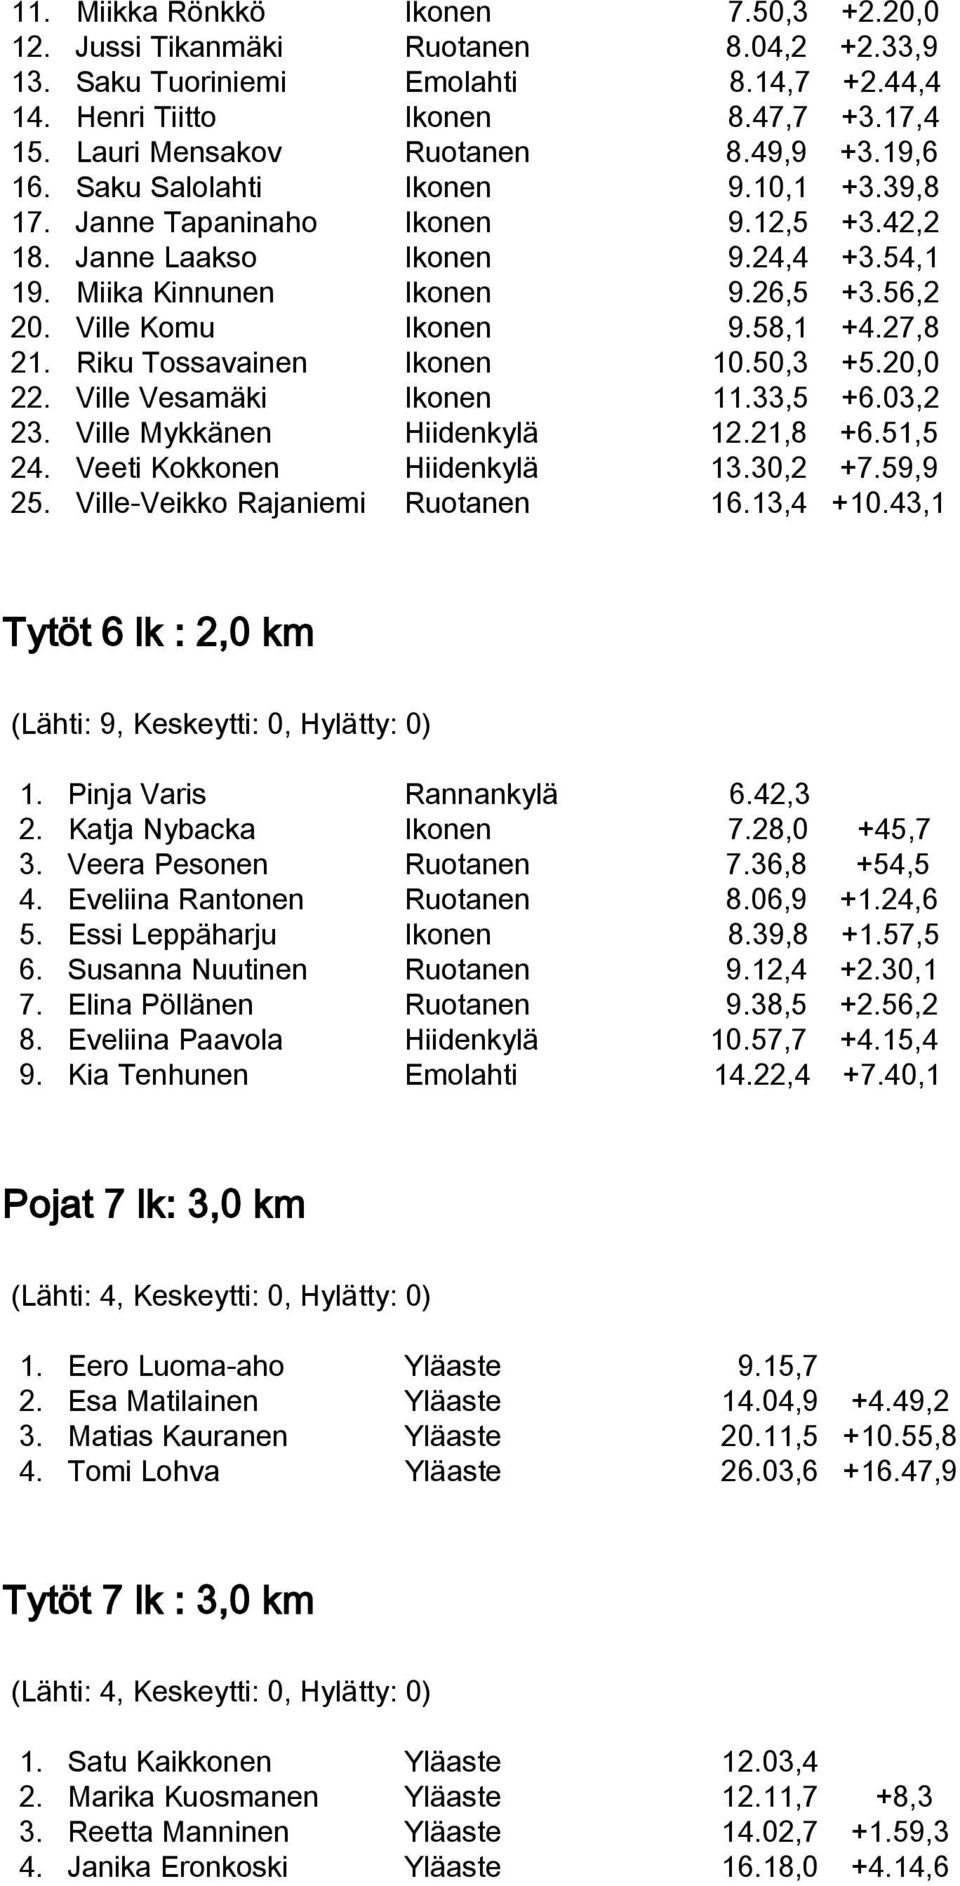 Ville Komu Ikonen 9.58,1 +4.27,8 21. Riku Tossavainen Ikonen 10.50,3 +5.20,0 22. Ville Vesamäki Ikonen 11.33,5 +6.03,2 23. Ville Mykkänen Hiidenkylä 12.21,8 +6.51,5 24. Veeti Kokkonen Hiidenkylä 13.